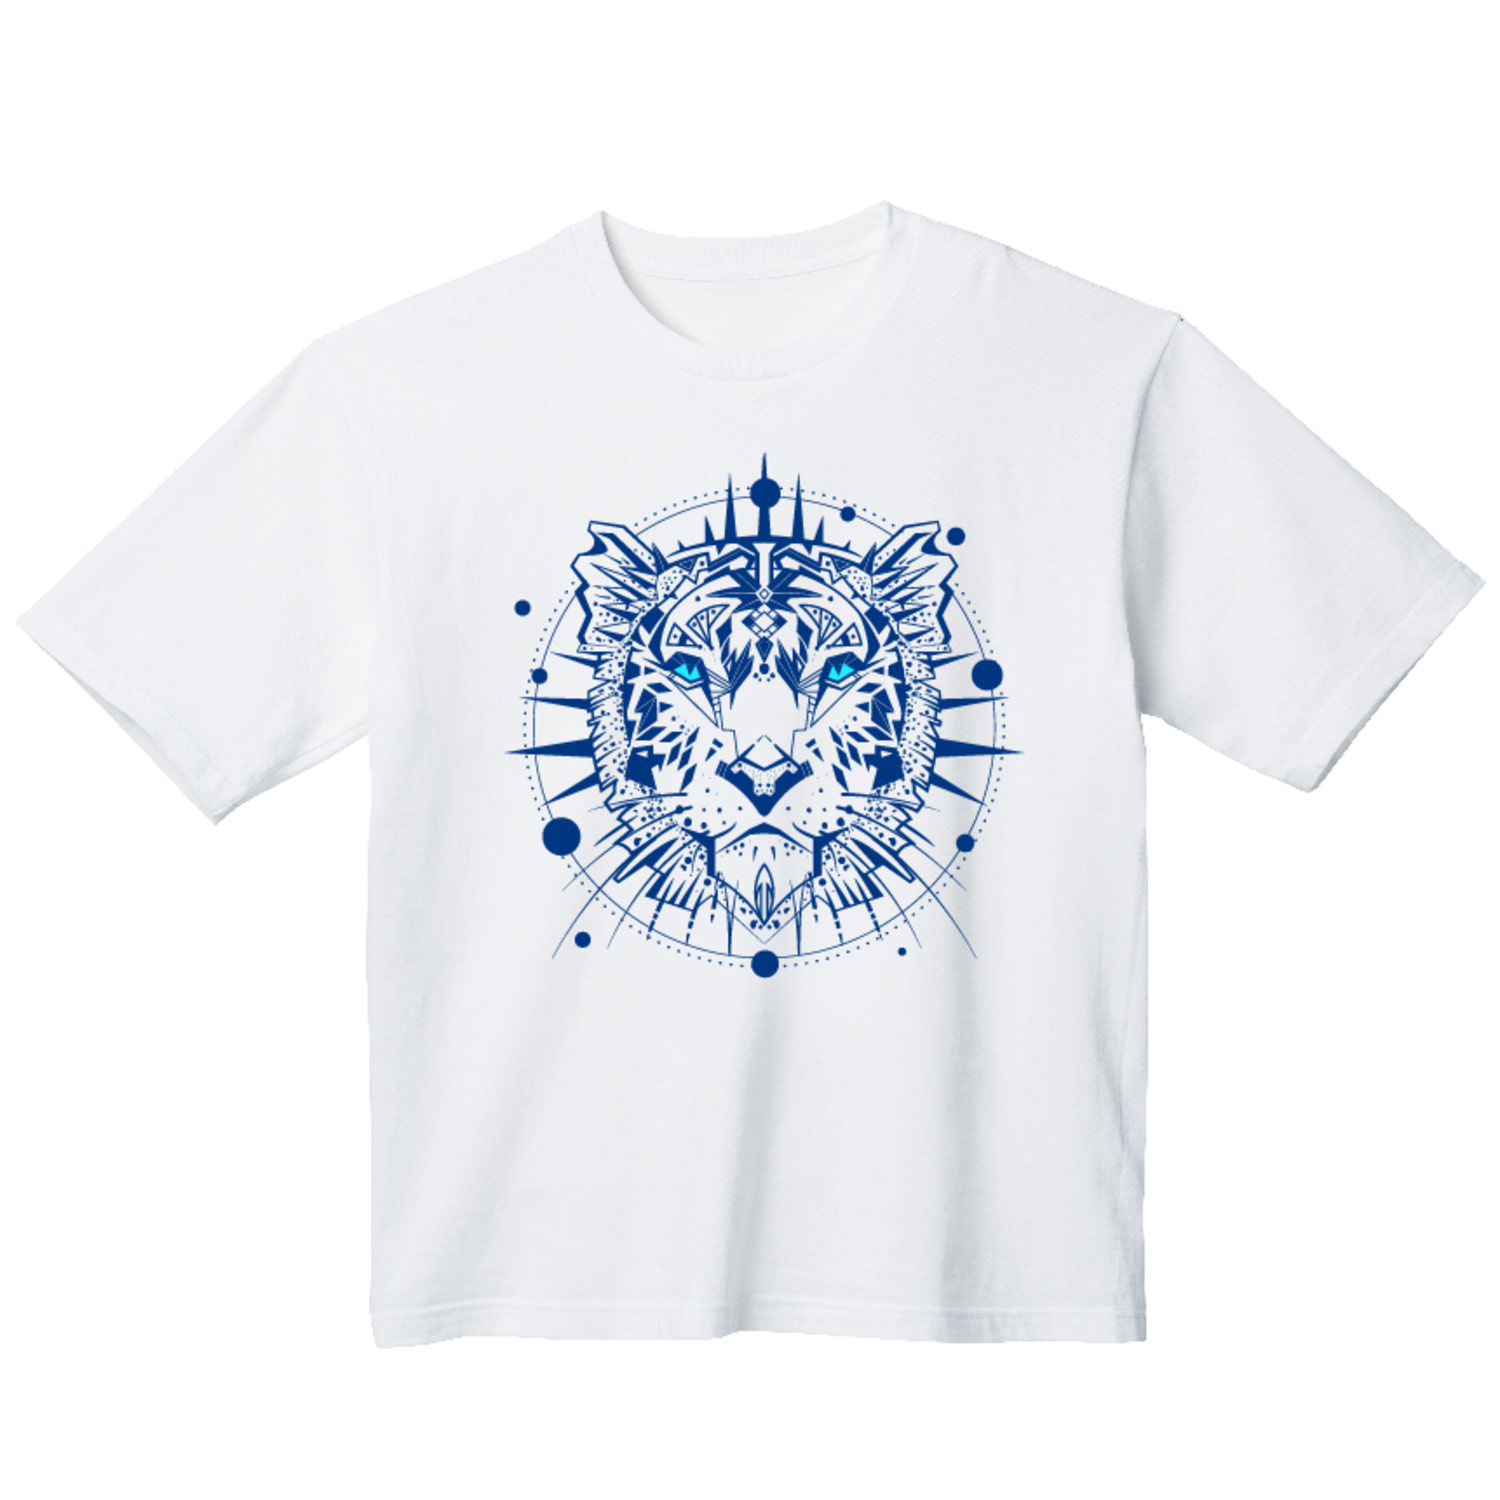 신비로운 호랑이 그래픽 오버핏 티셔츠 animal.48